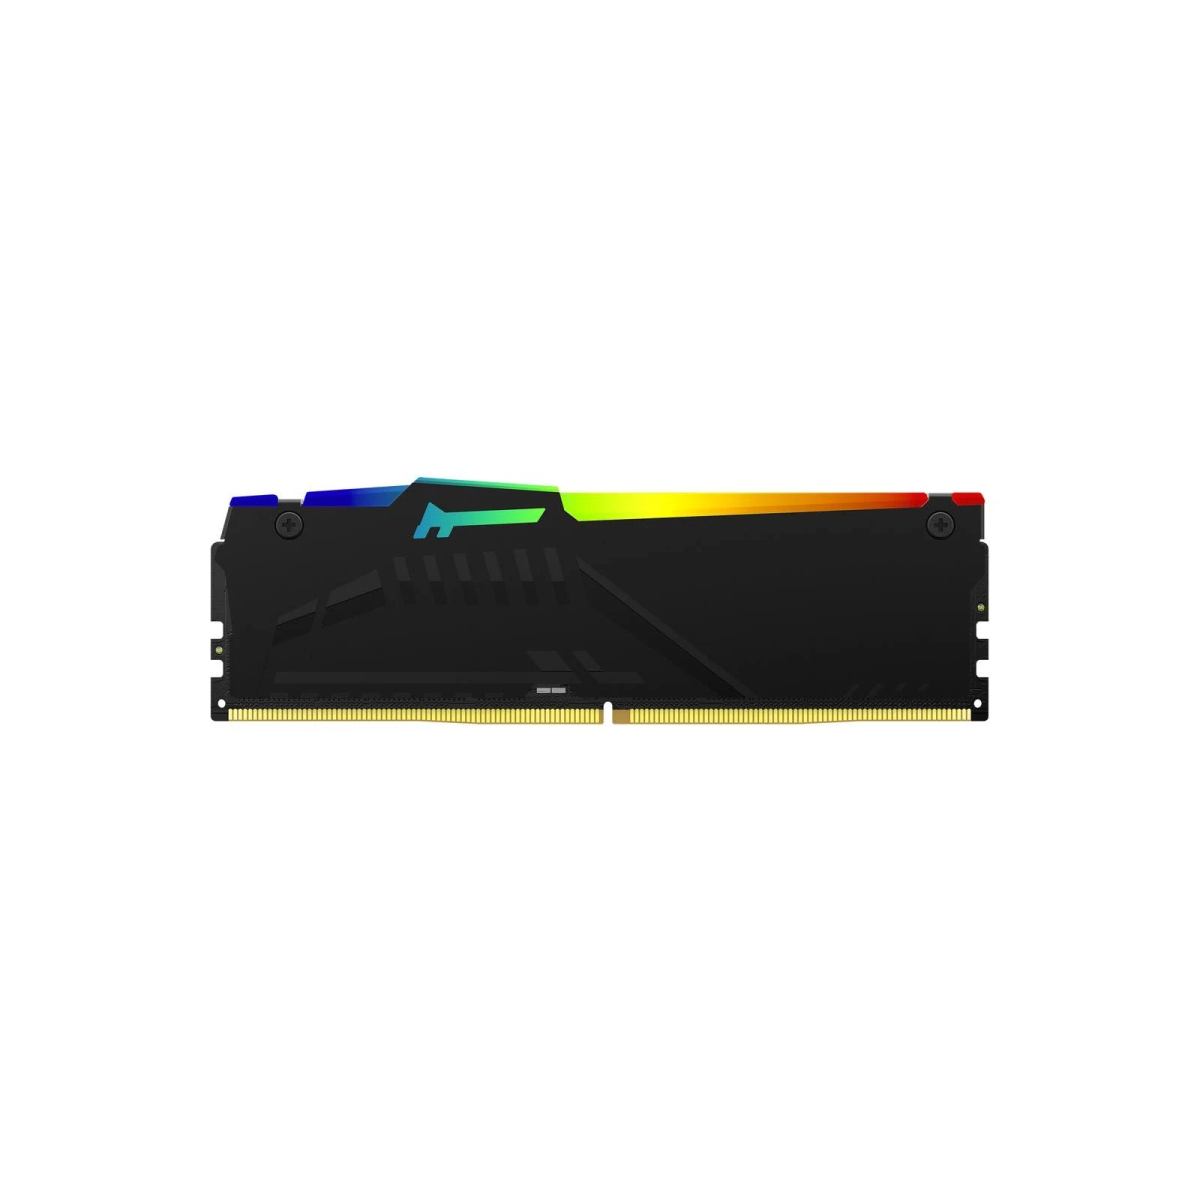 GB 32 Beast RGB Arbeitsspeicher KINGSTON DDR5